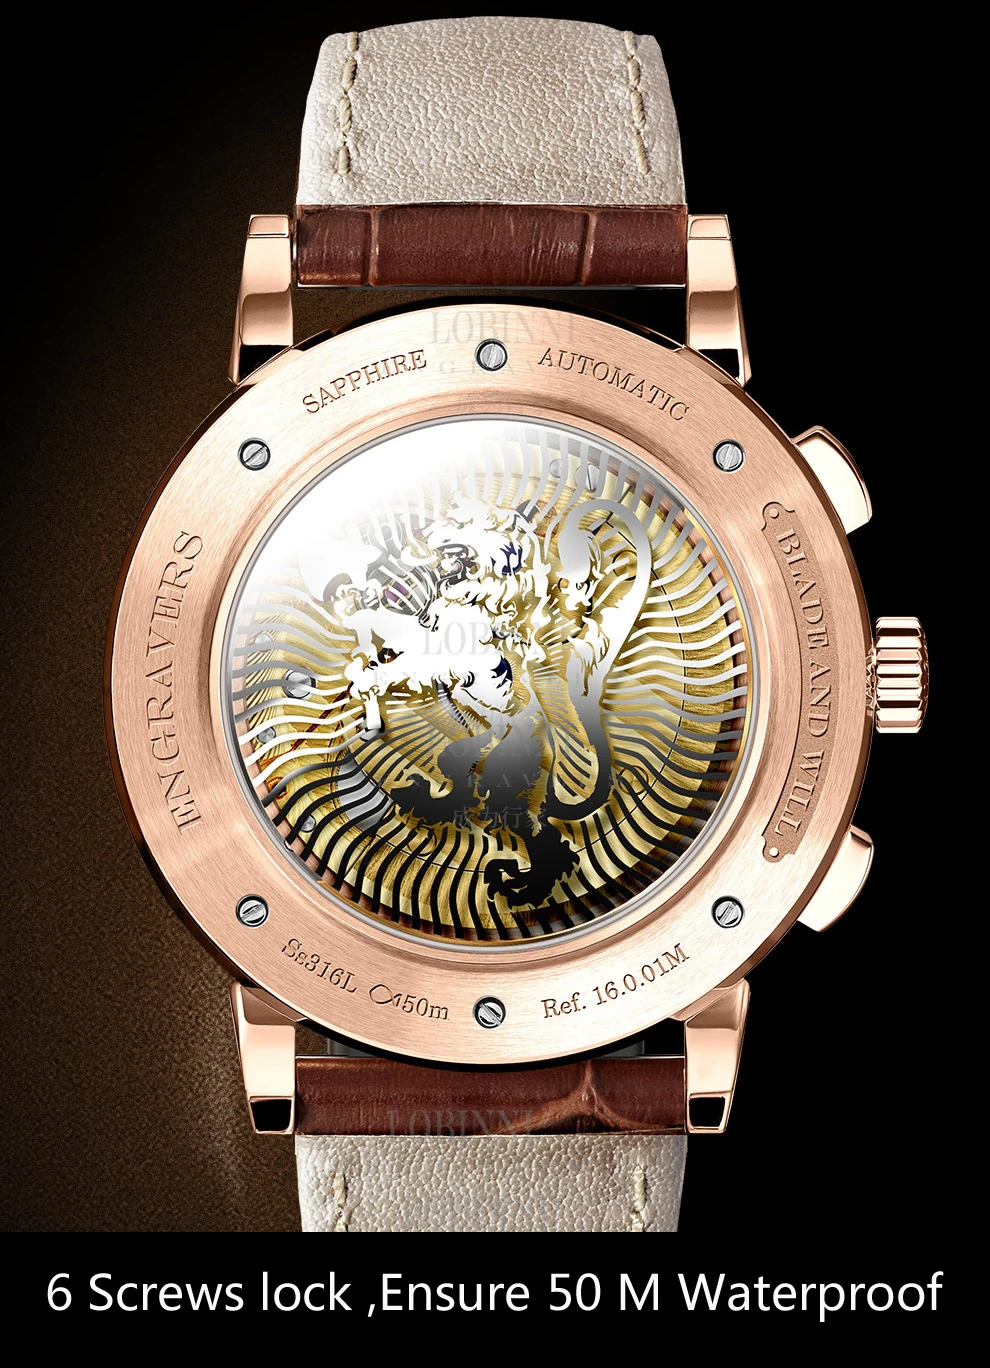 Switzerland LOBINNI мужской роскошный бренд часов автоматические механические мужские наручные часы Сапфировая кожа Tracer часы relogio L16001-2